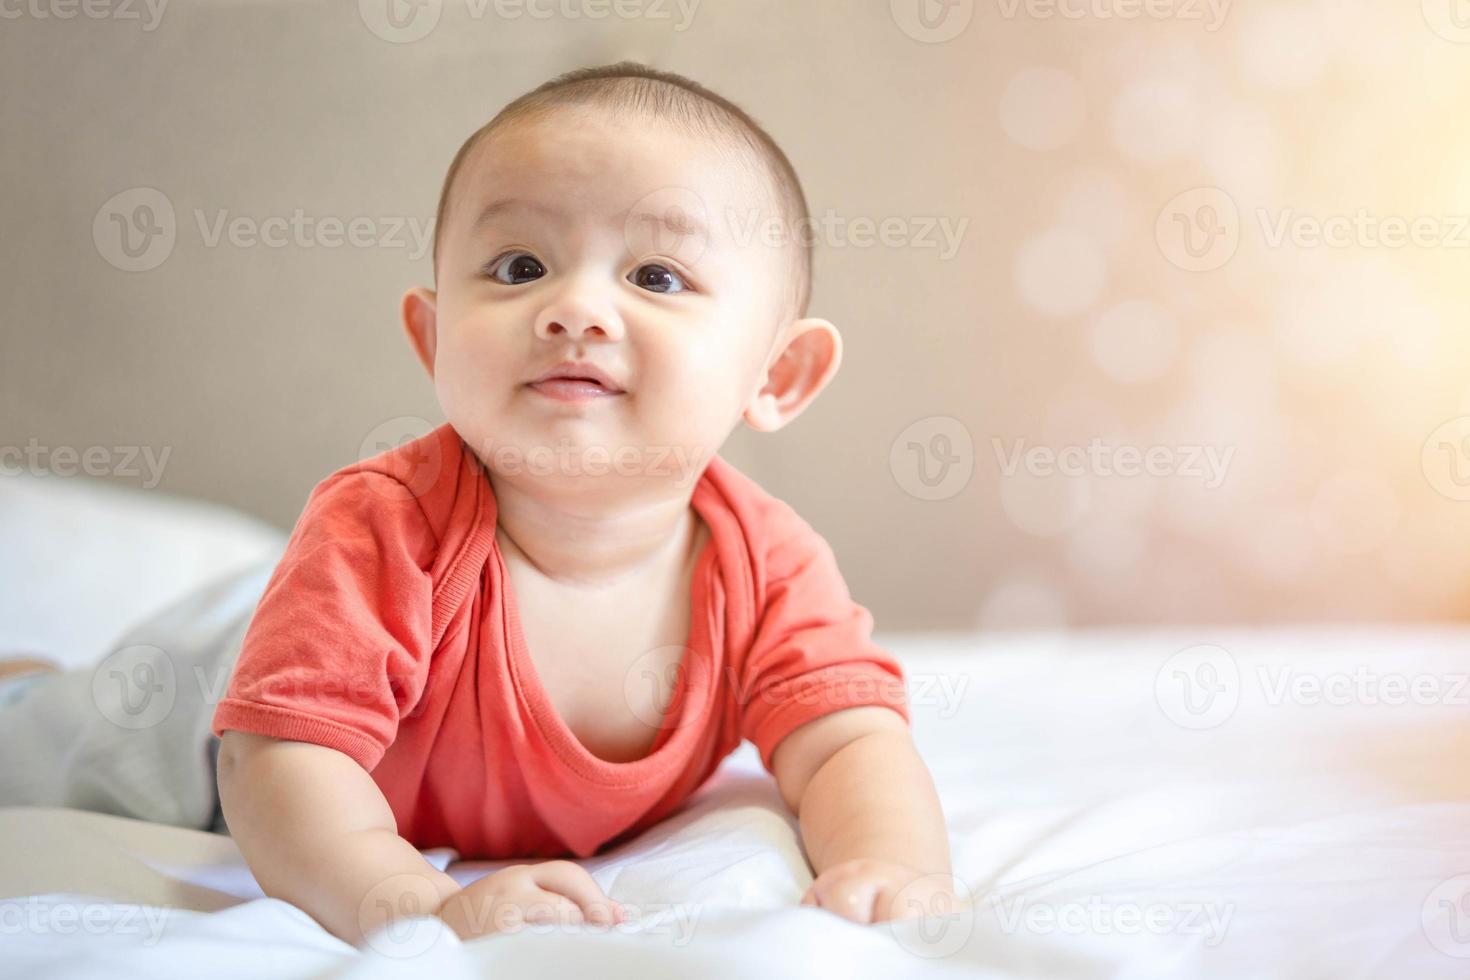 família feliz, bebê recém-nascido asiático fofo usa camisa vermelha deitado, rastejando, brinca na cama branca com sorriso sorridente rosto feliz. criança adorável infantil inocente no primeiro dia de vida. conceito de dia das mães. foto